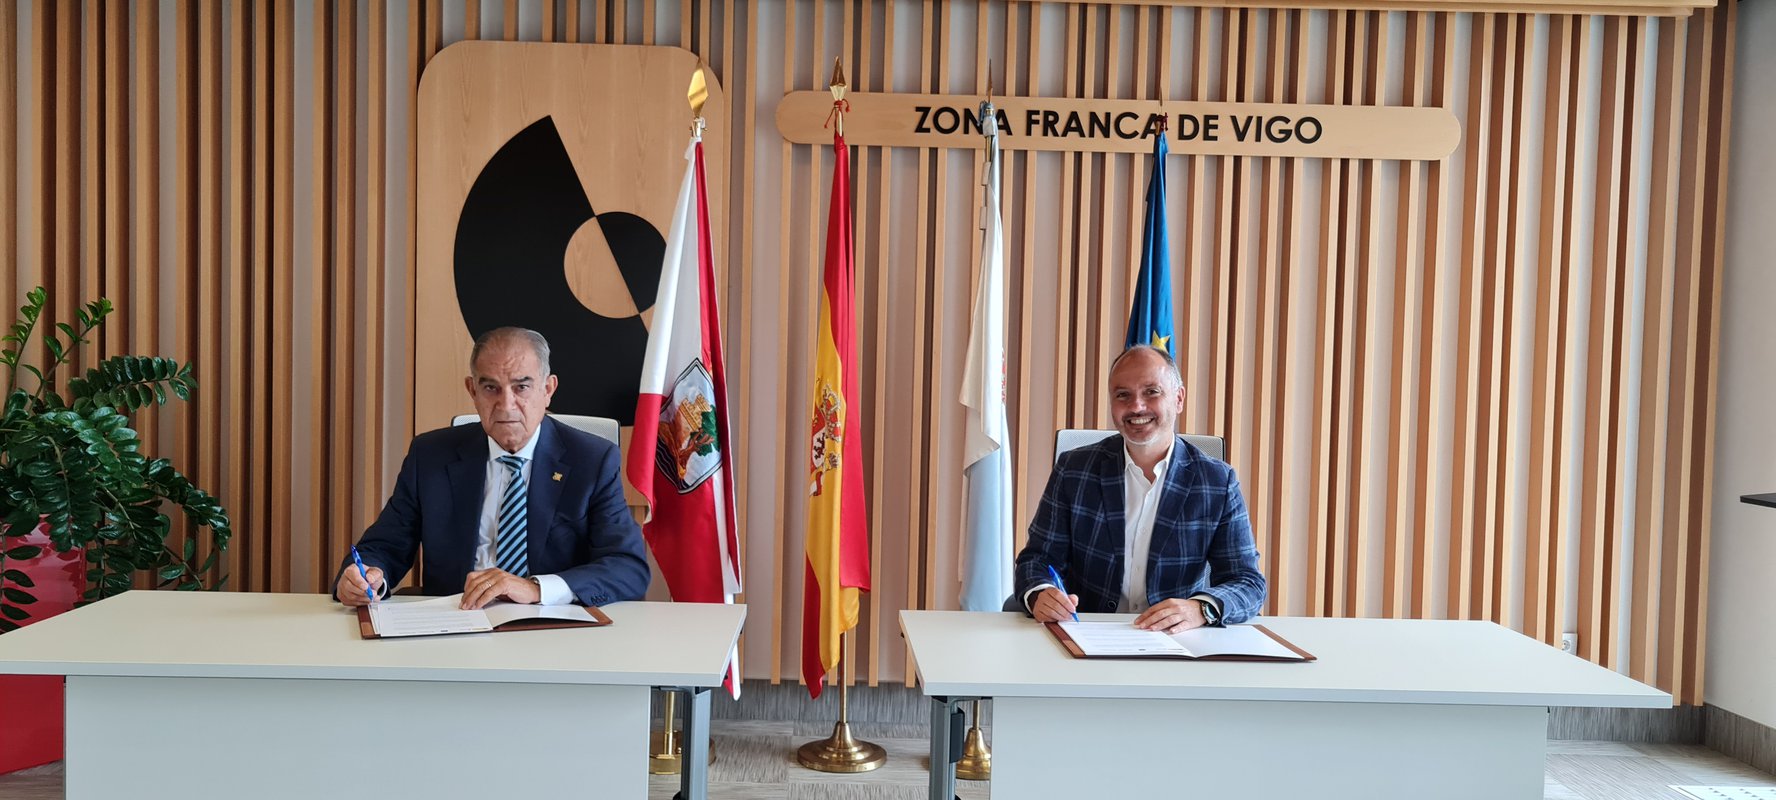 Zona Franca de Vigo ayuda a las pymes a consolidar su comercio exterior